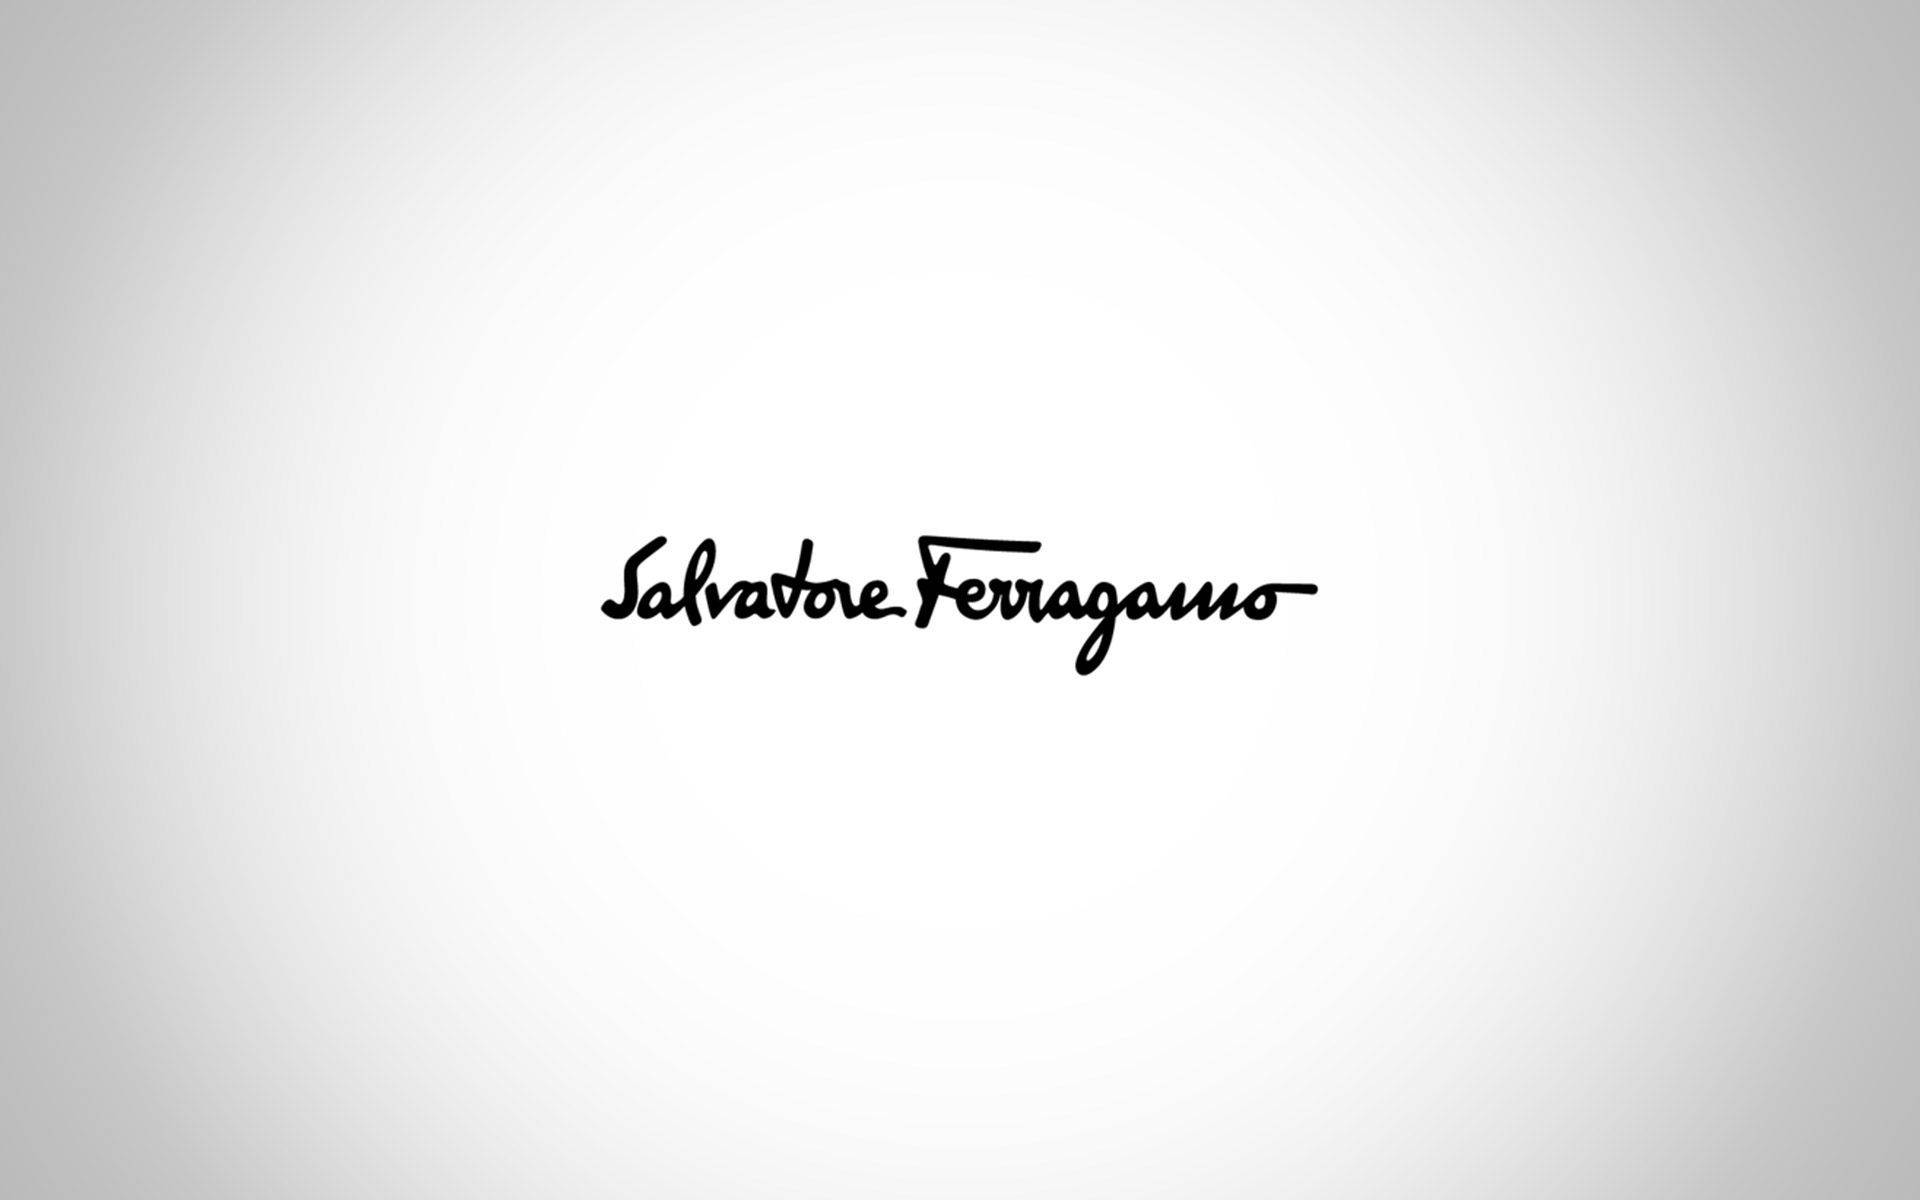 Download Salvatore Ferragamo Plain Logo Wallpaper | Wallpapers.com